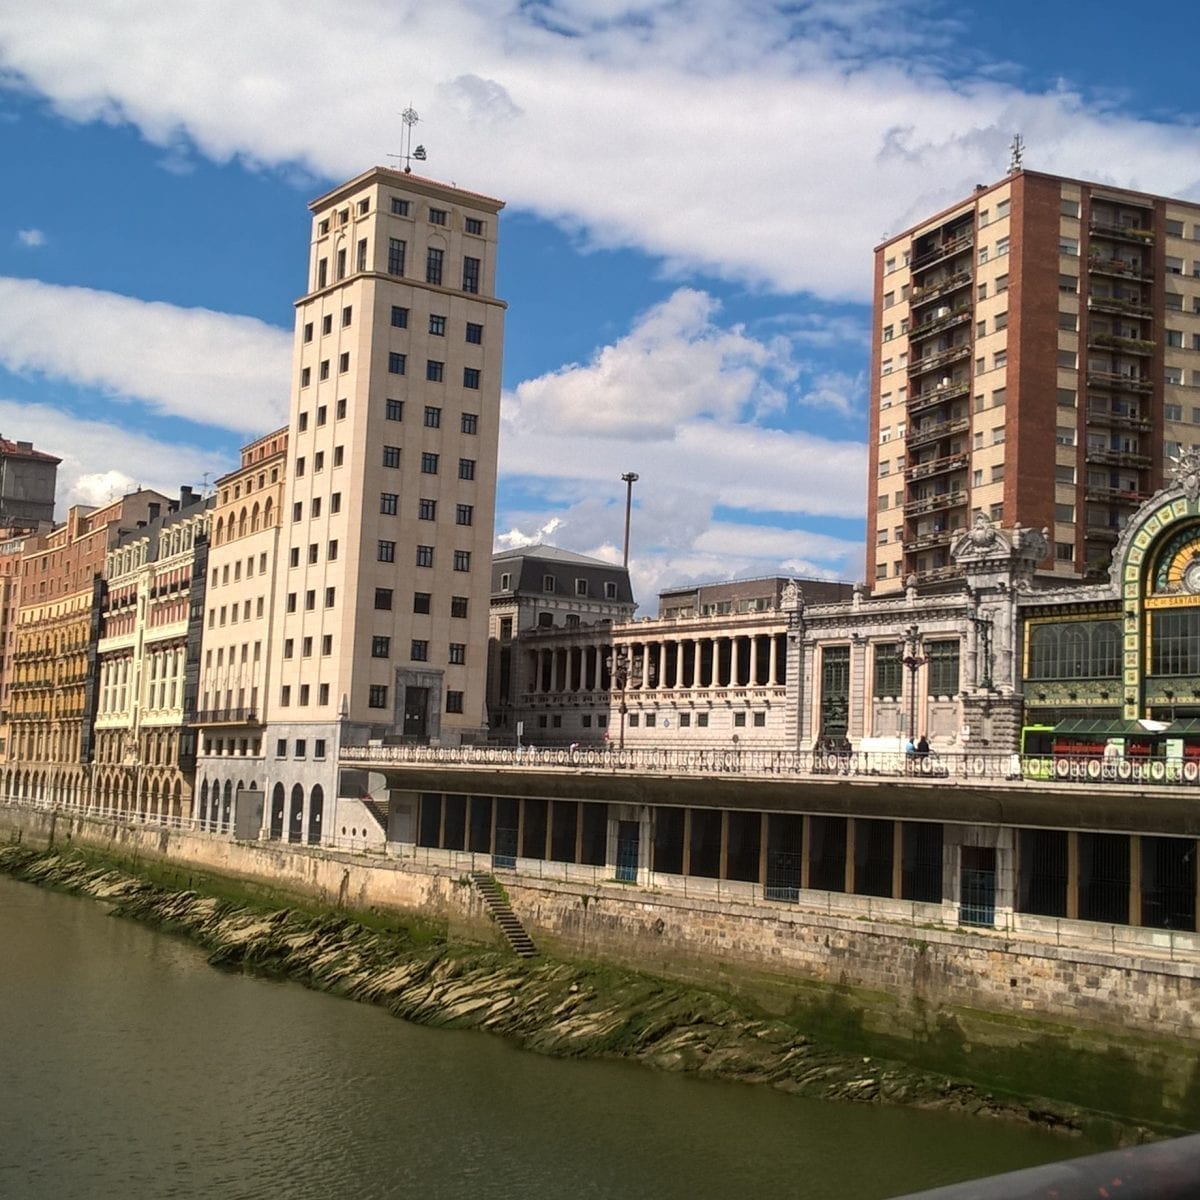 Bilbao clásico y moderno